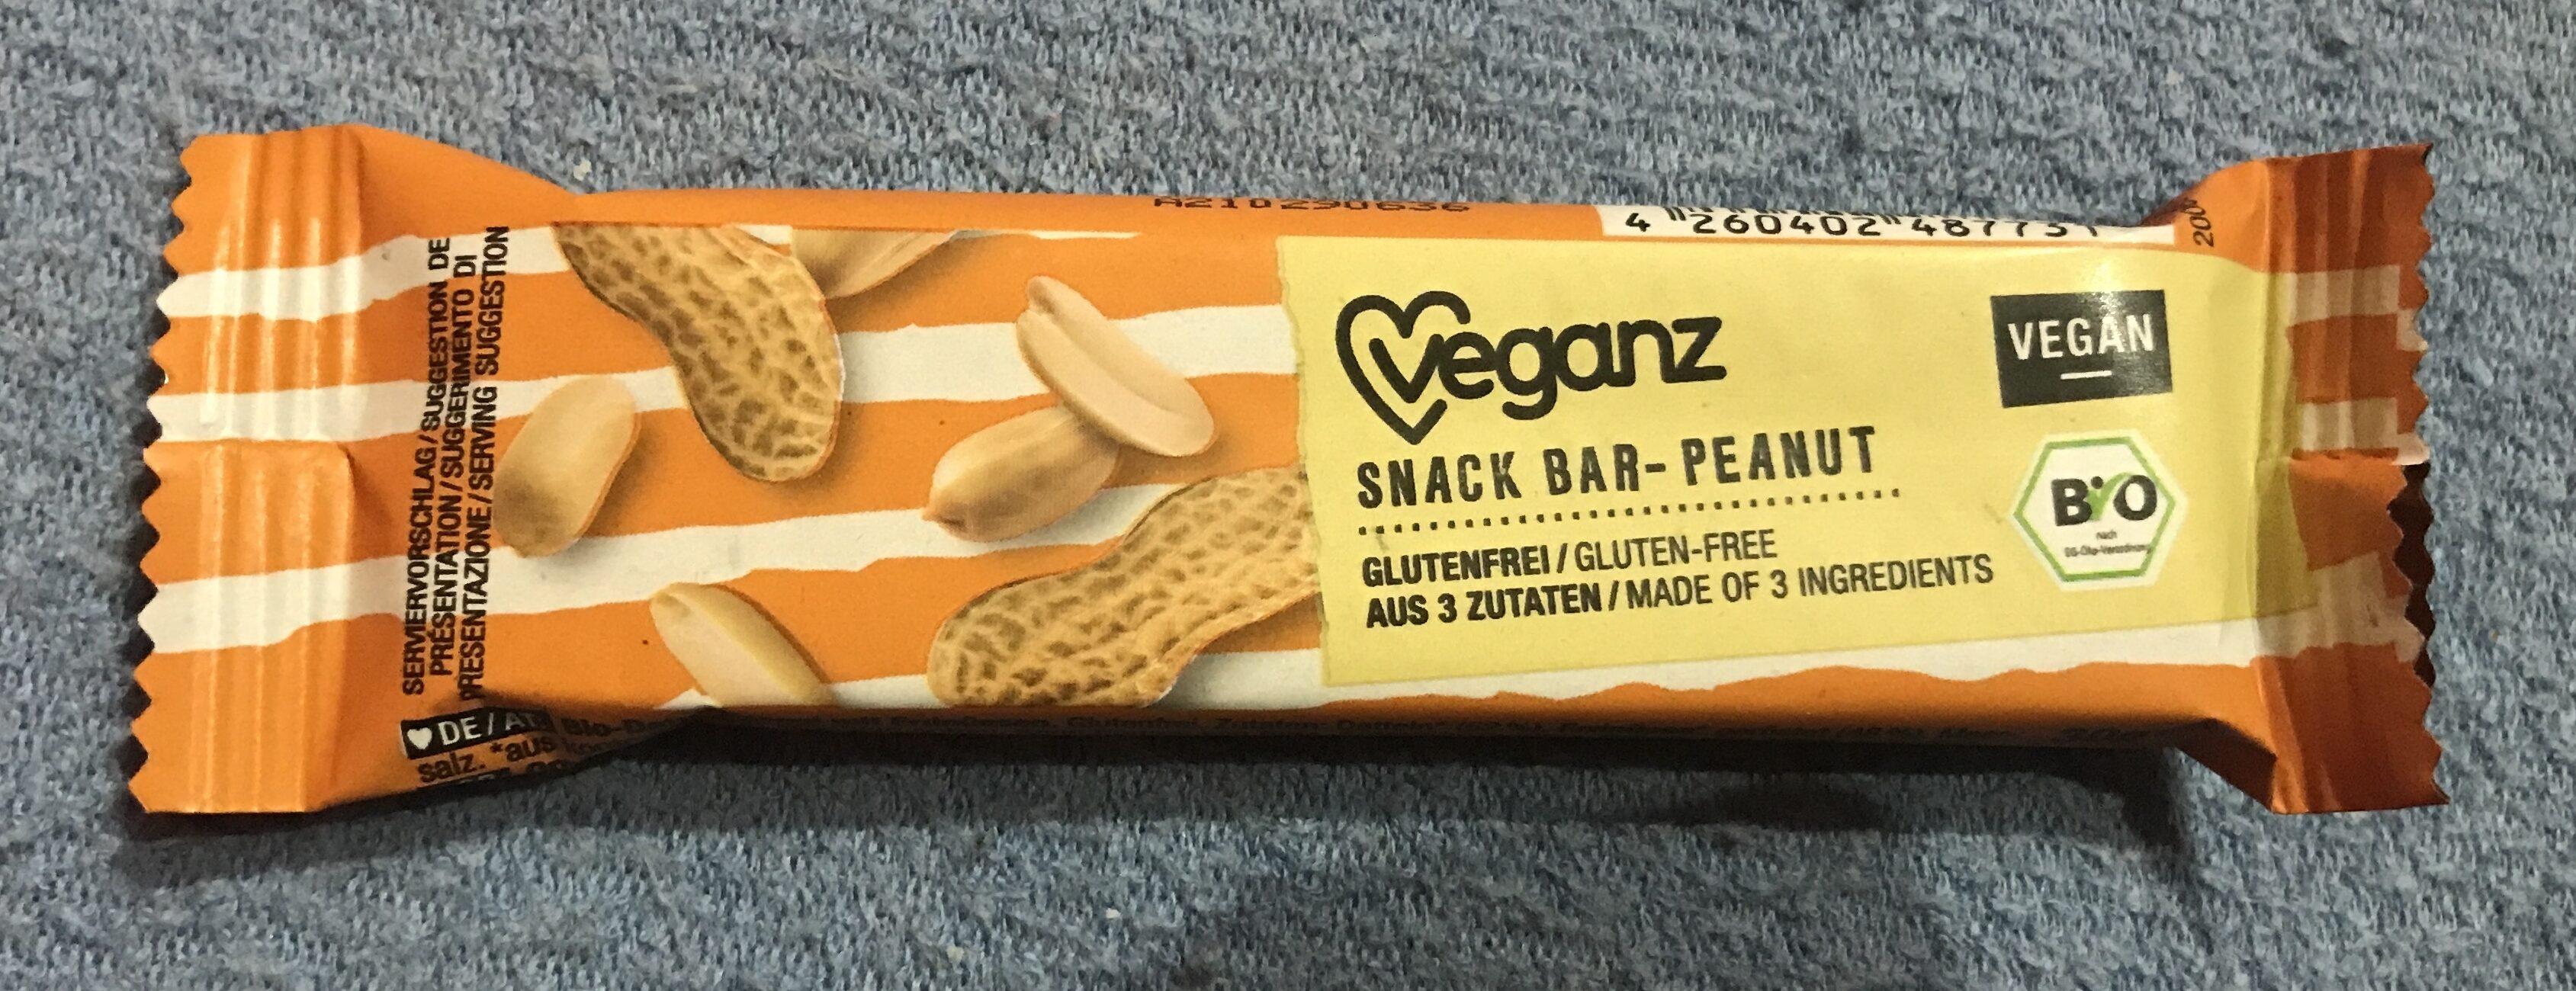 Snack bar Peanut - Produkt - de